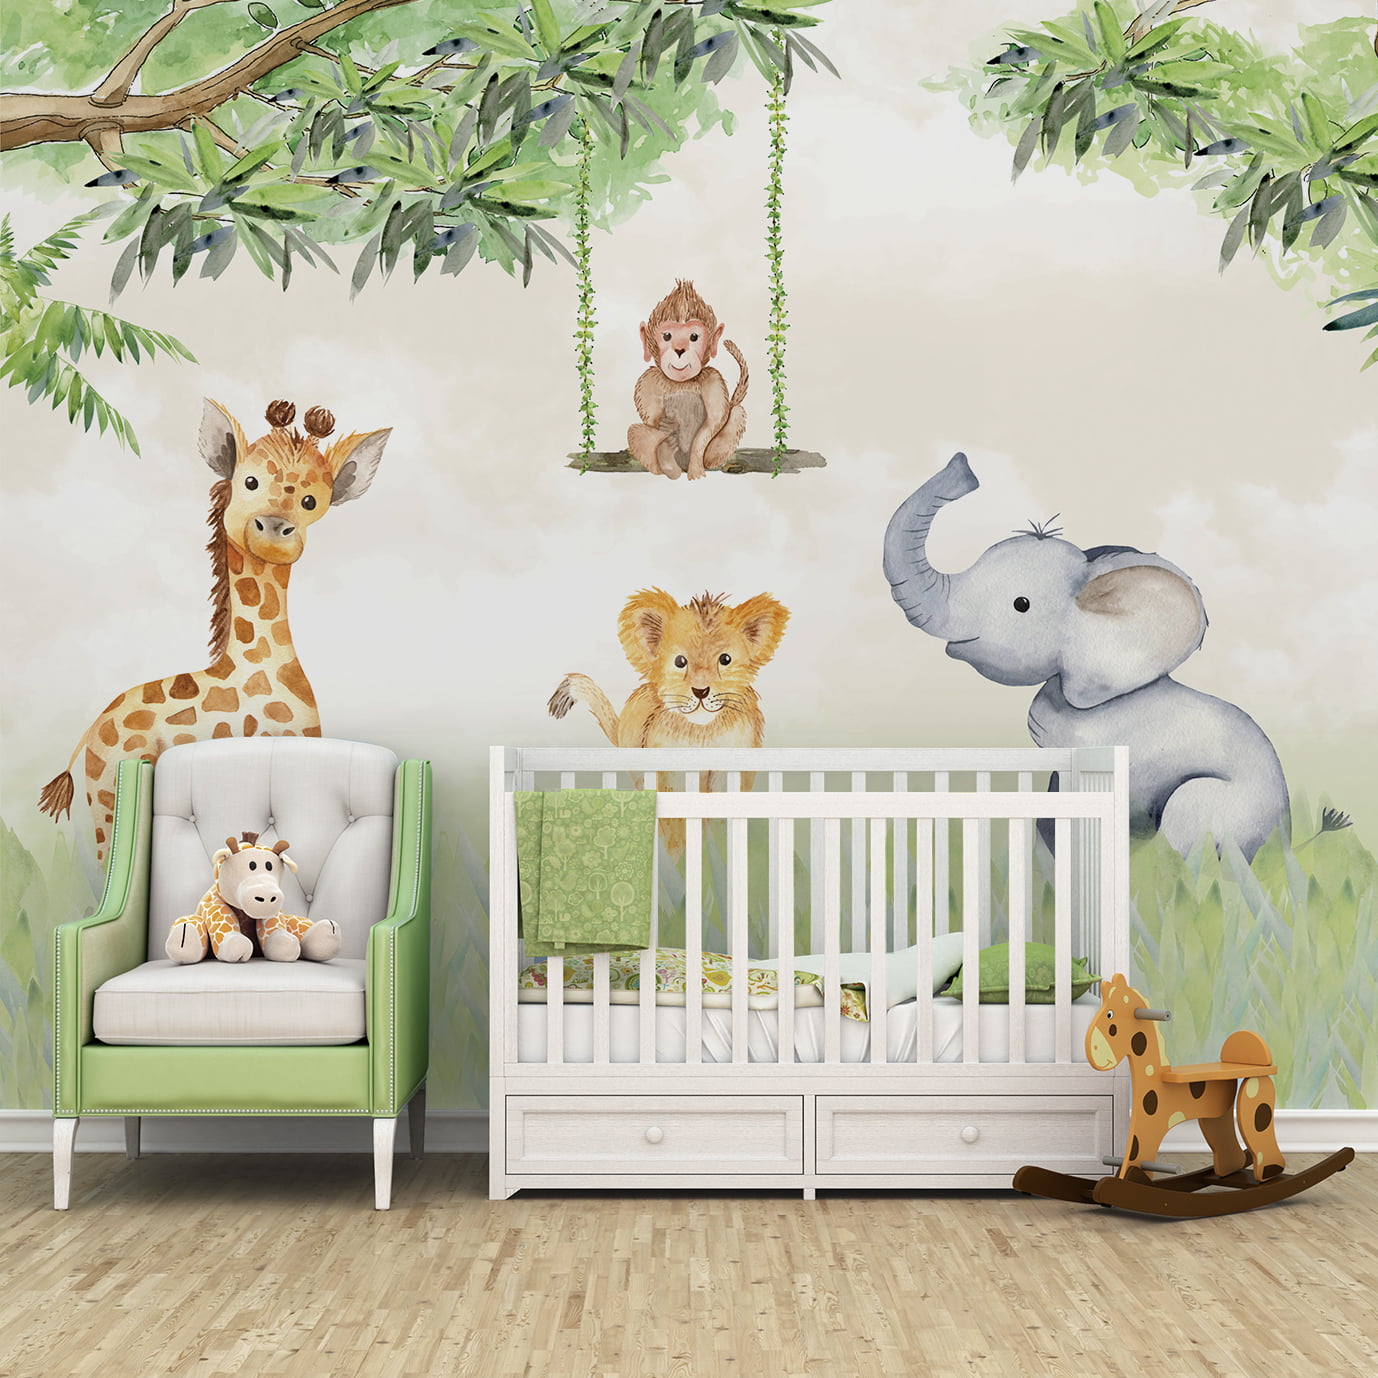 quadro quarto bebe tema safari